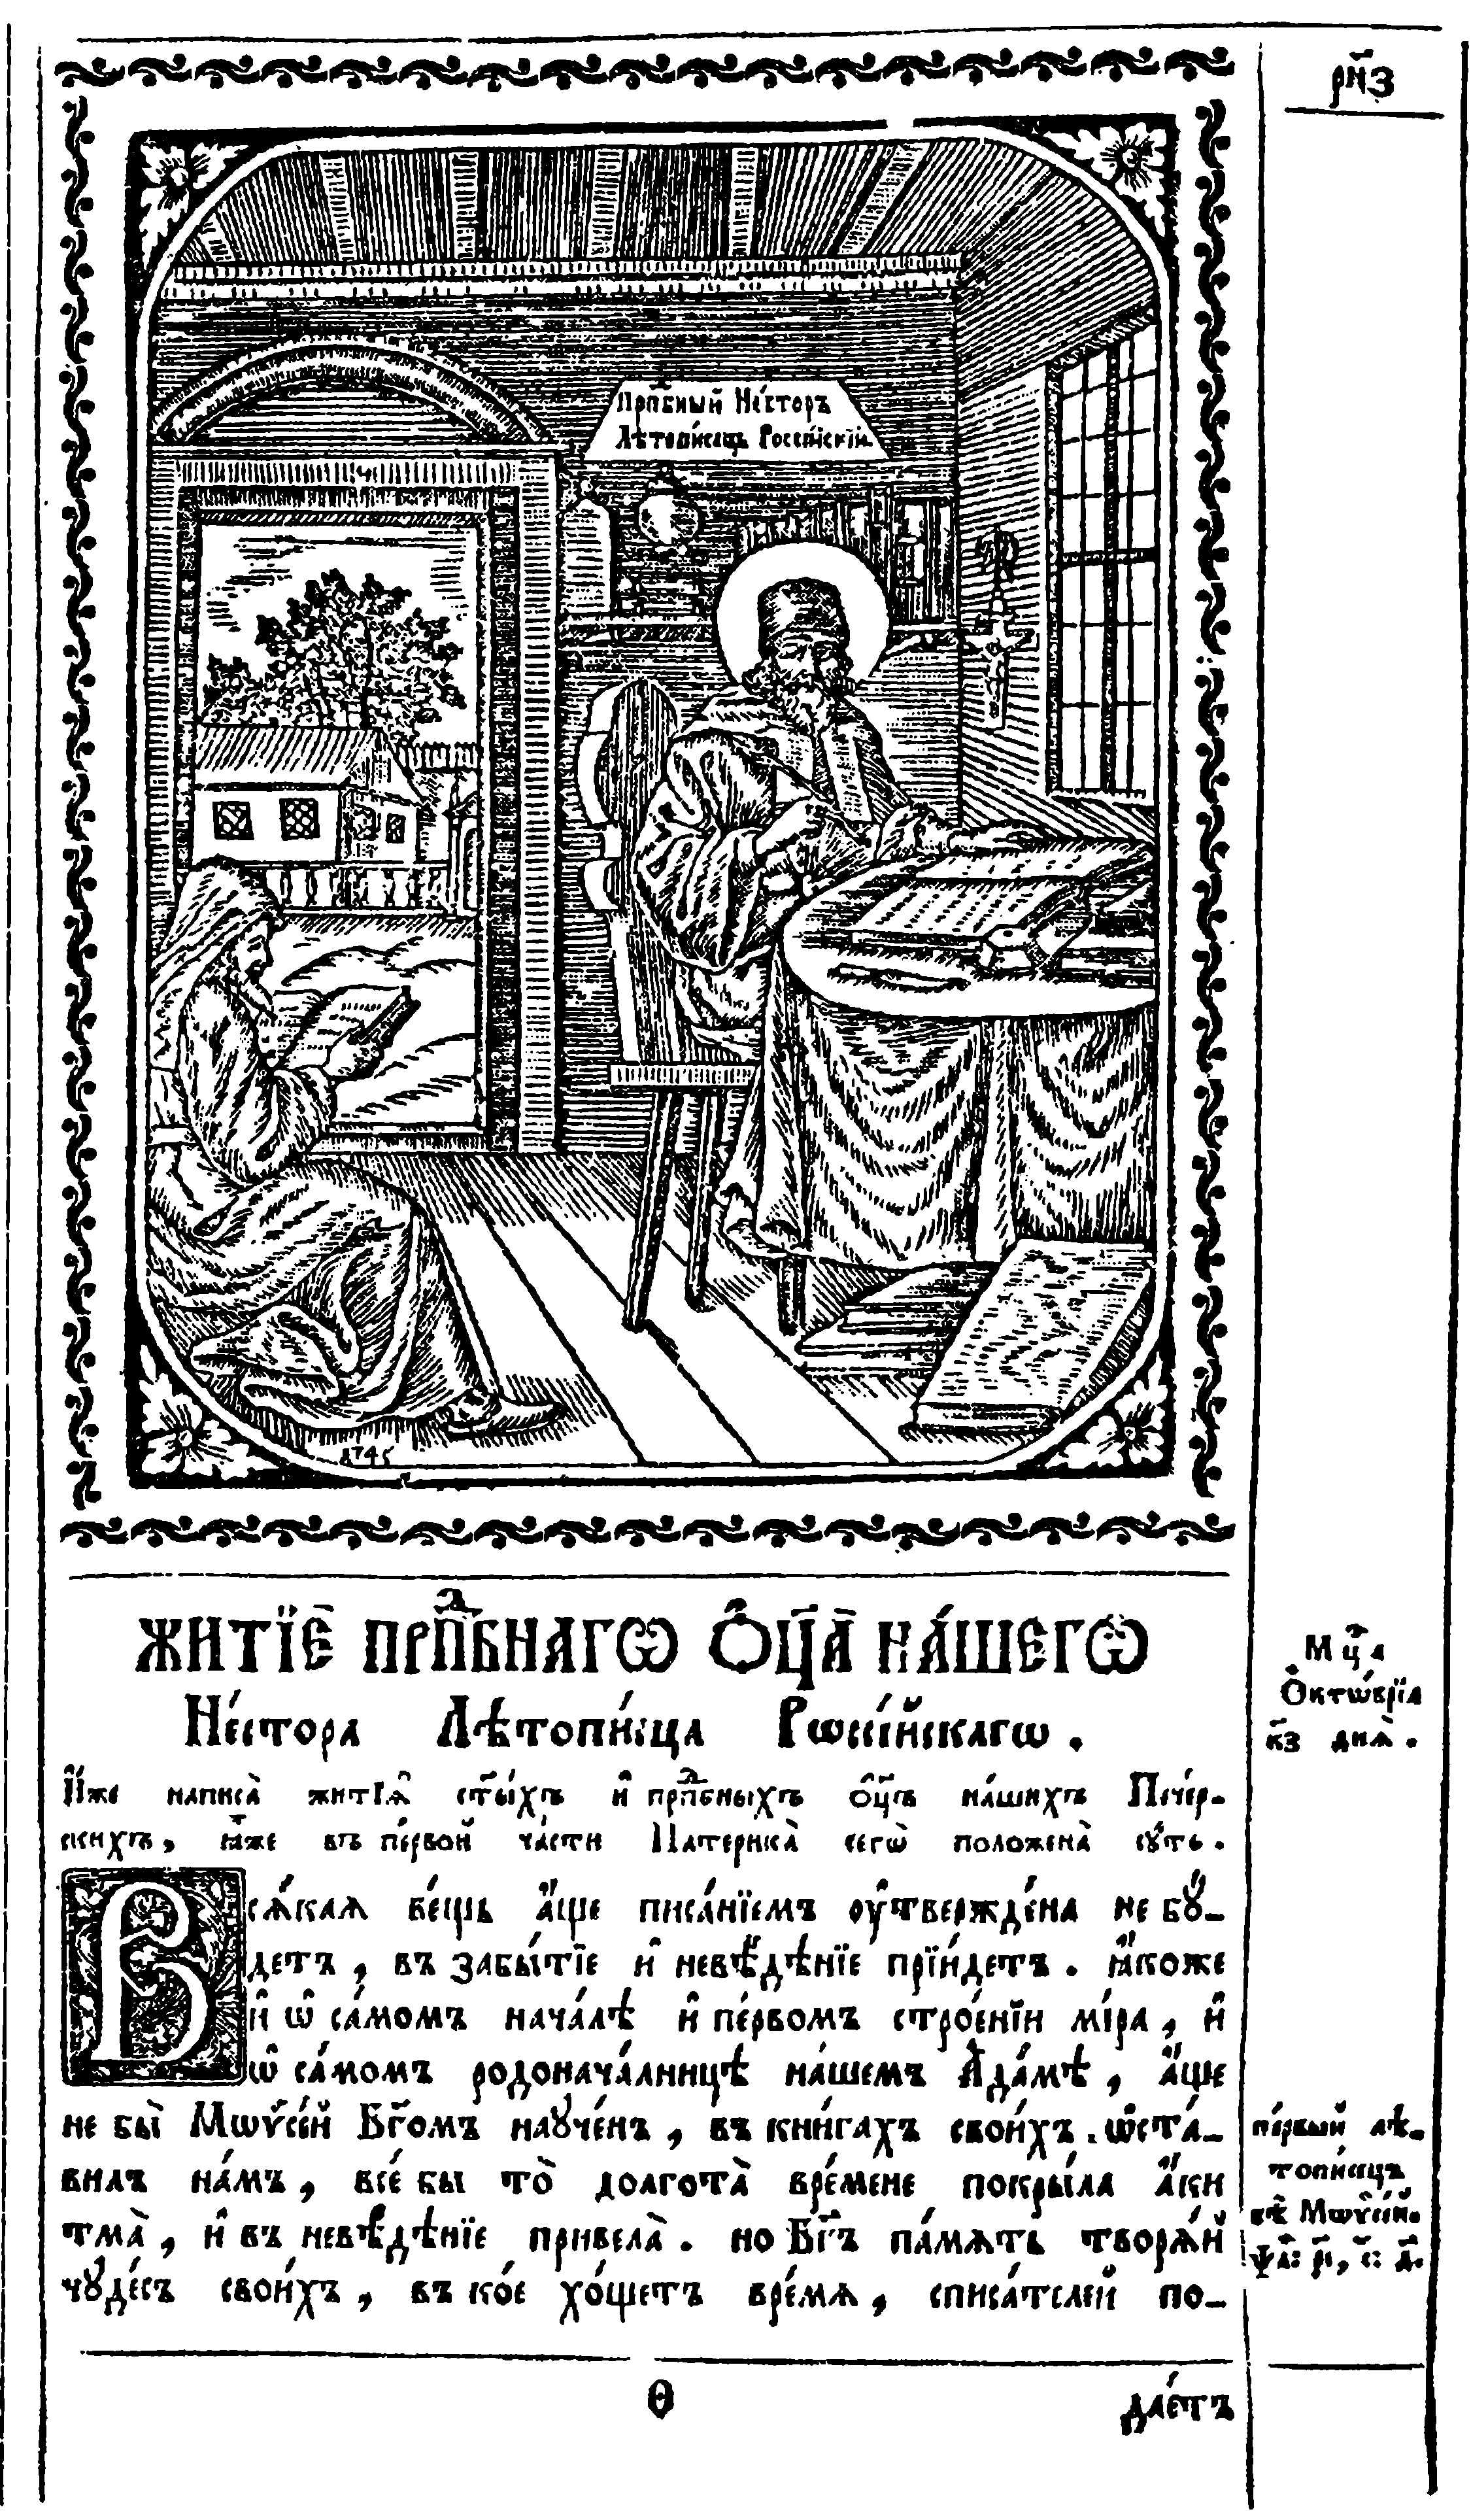 Преподобный Нестор, монах Киево-Печорского монастыря, один из первых русских летописцев. Гравюра XVIII в